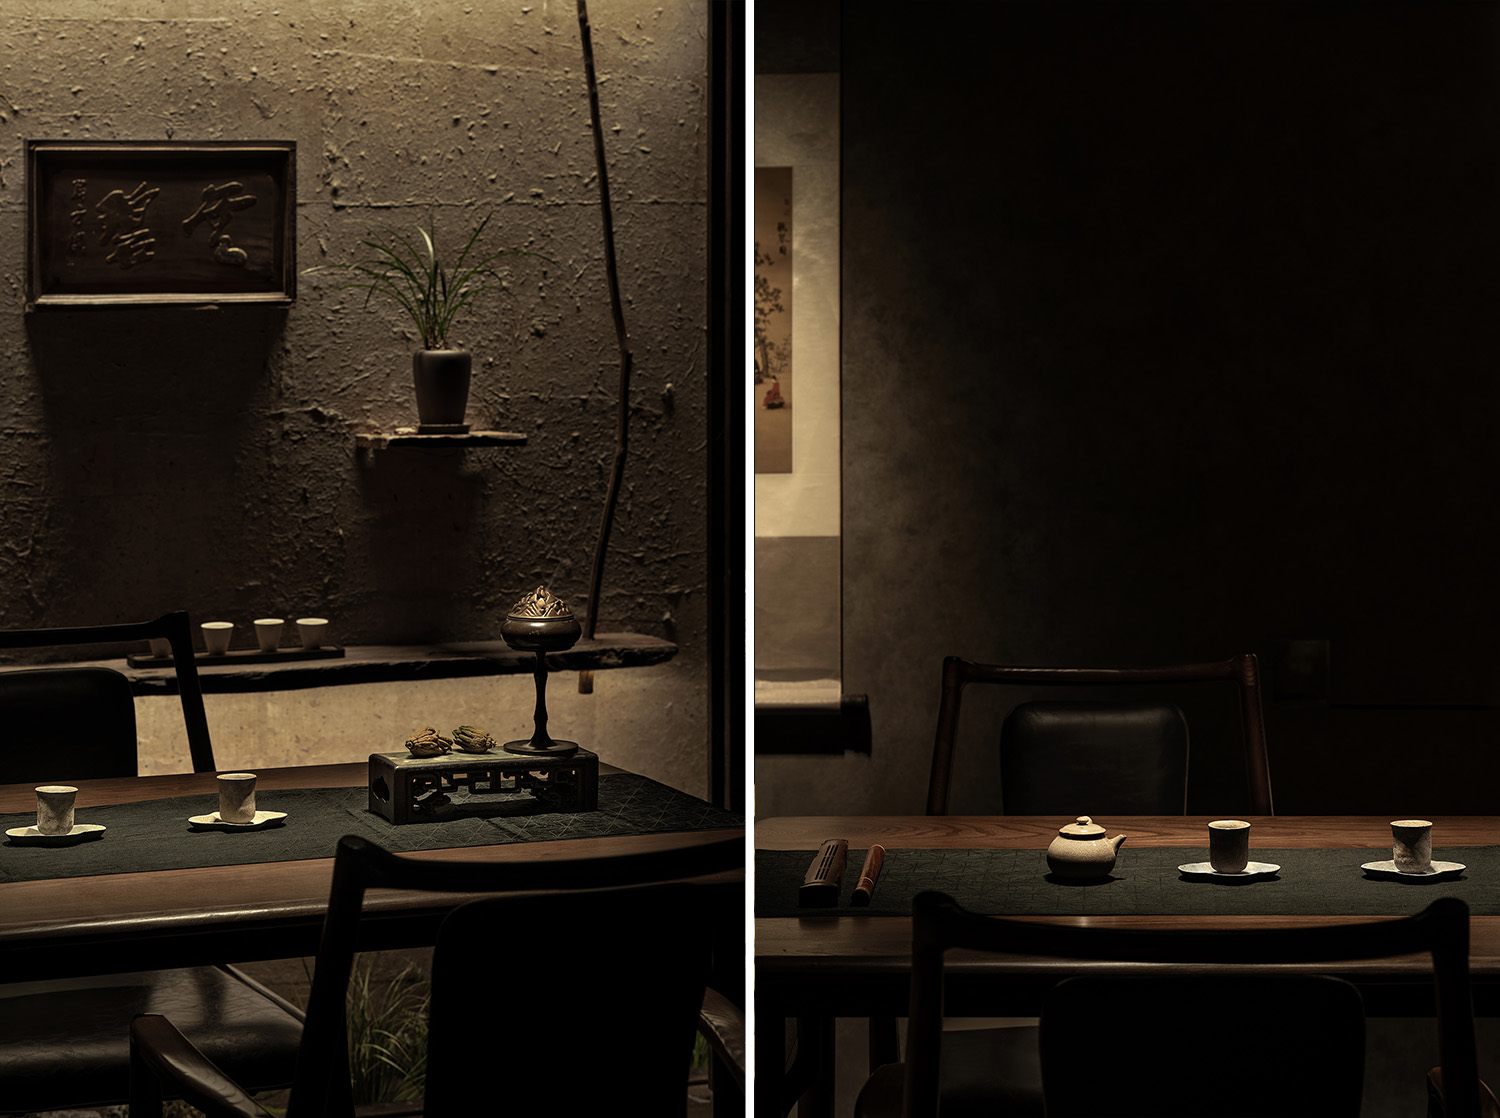 茶室设计,茶空间设计,茶室装修,主题茶室设计,北京和木The Home·神玉店·茶空间,茶室设计案例,茶室设计方案,北京,栋三尺设计